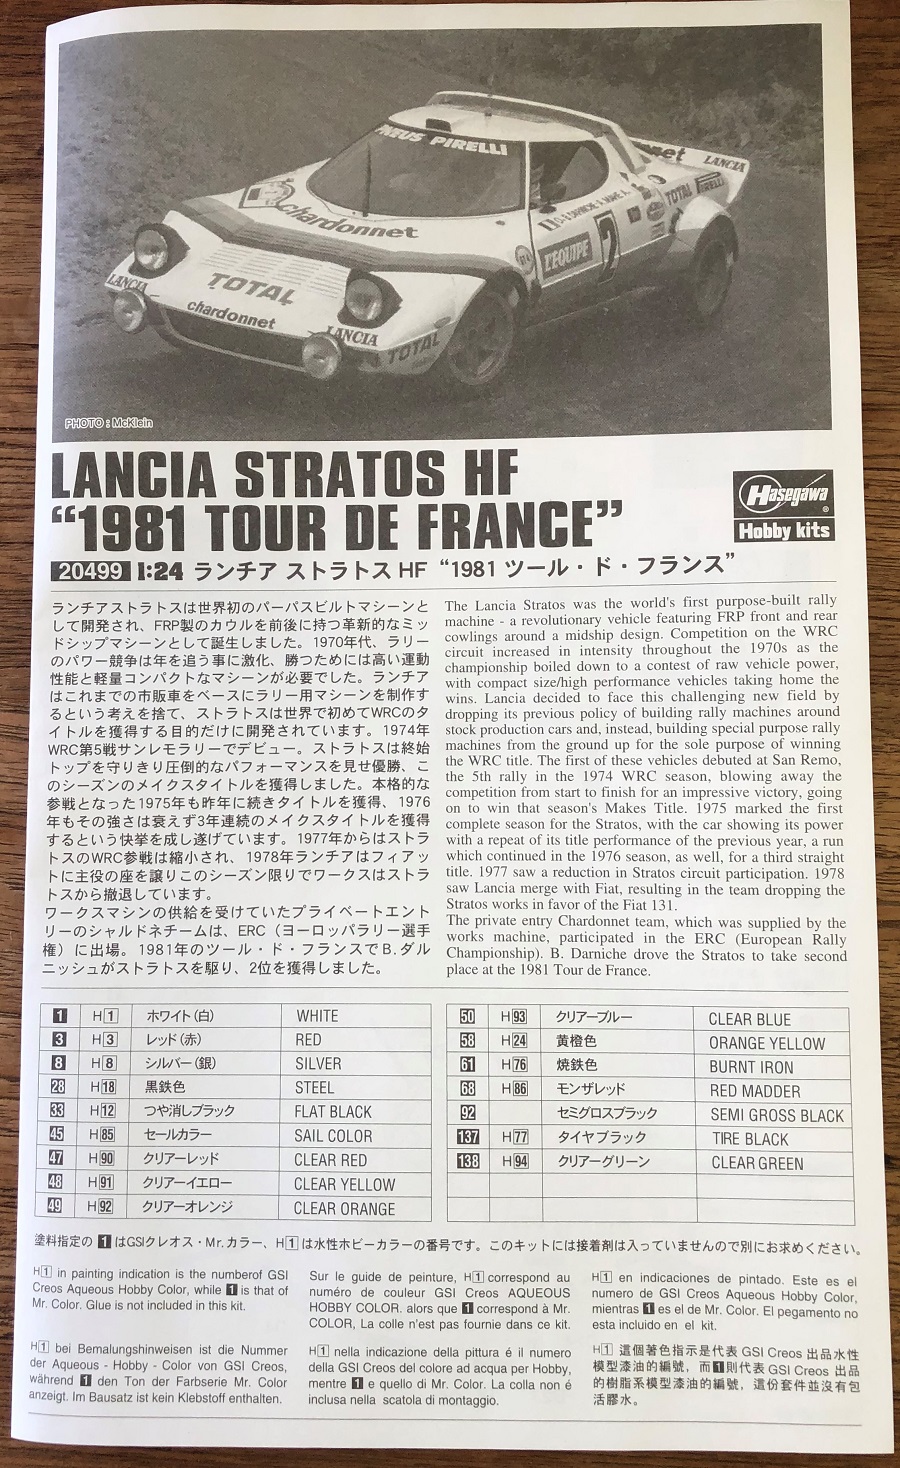 Lancia Stratos Hf tour de France 1981 Notice15